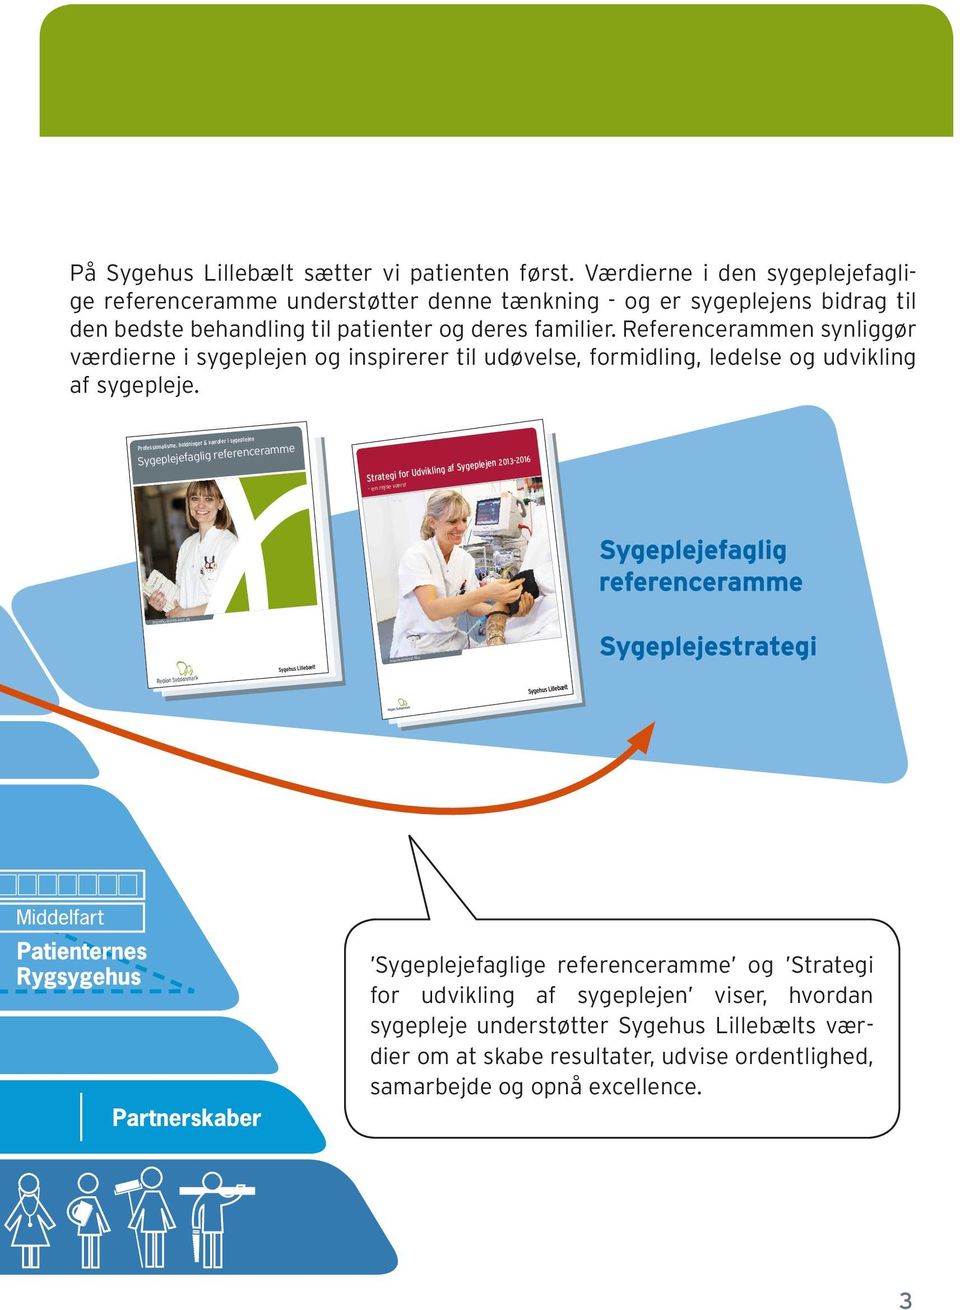 Referencerammen synliggør værdierne i sygeplejen og inspirerer til udøvelse, formidling, ledelse og udvikling af sygepleje.